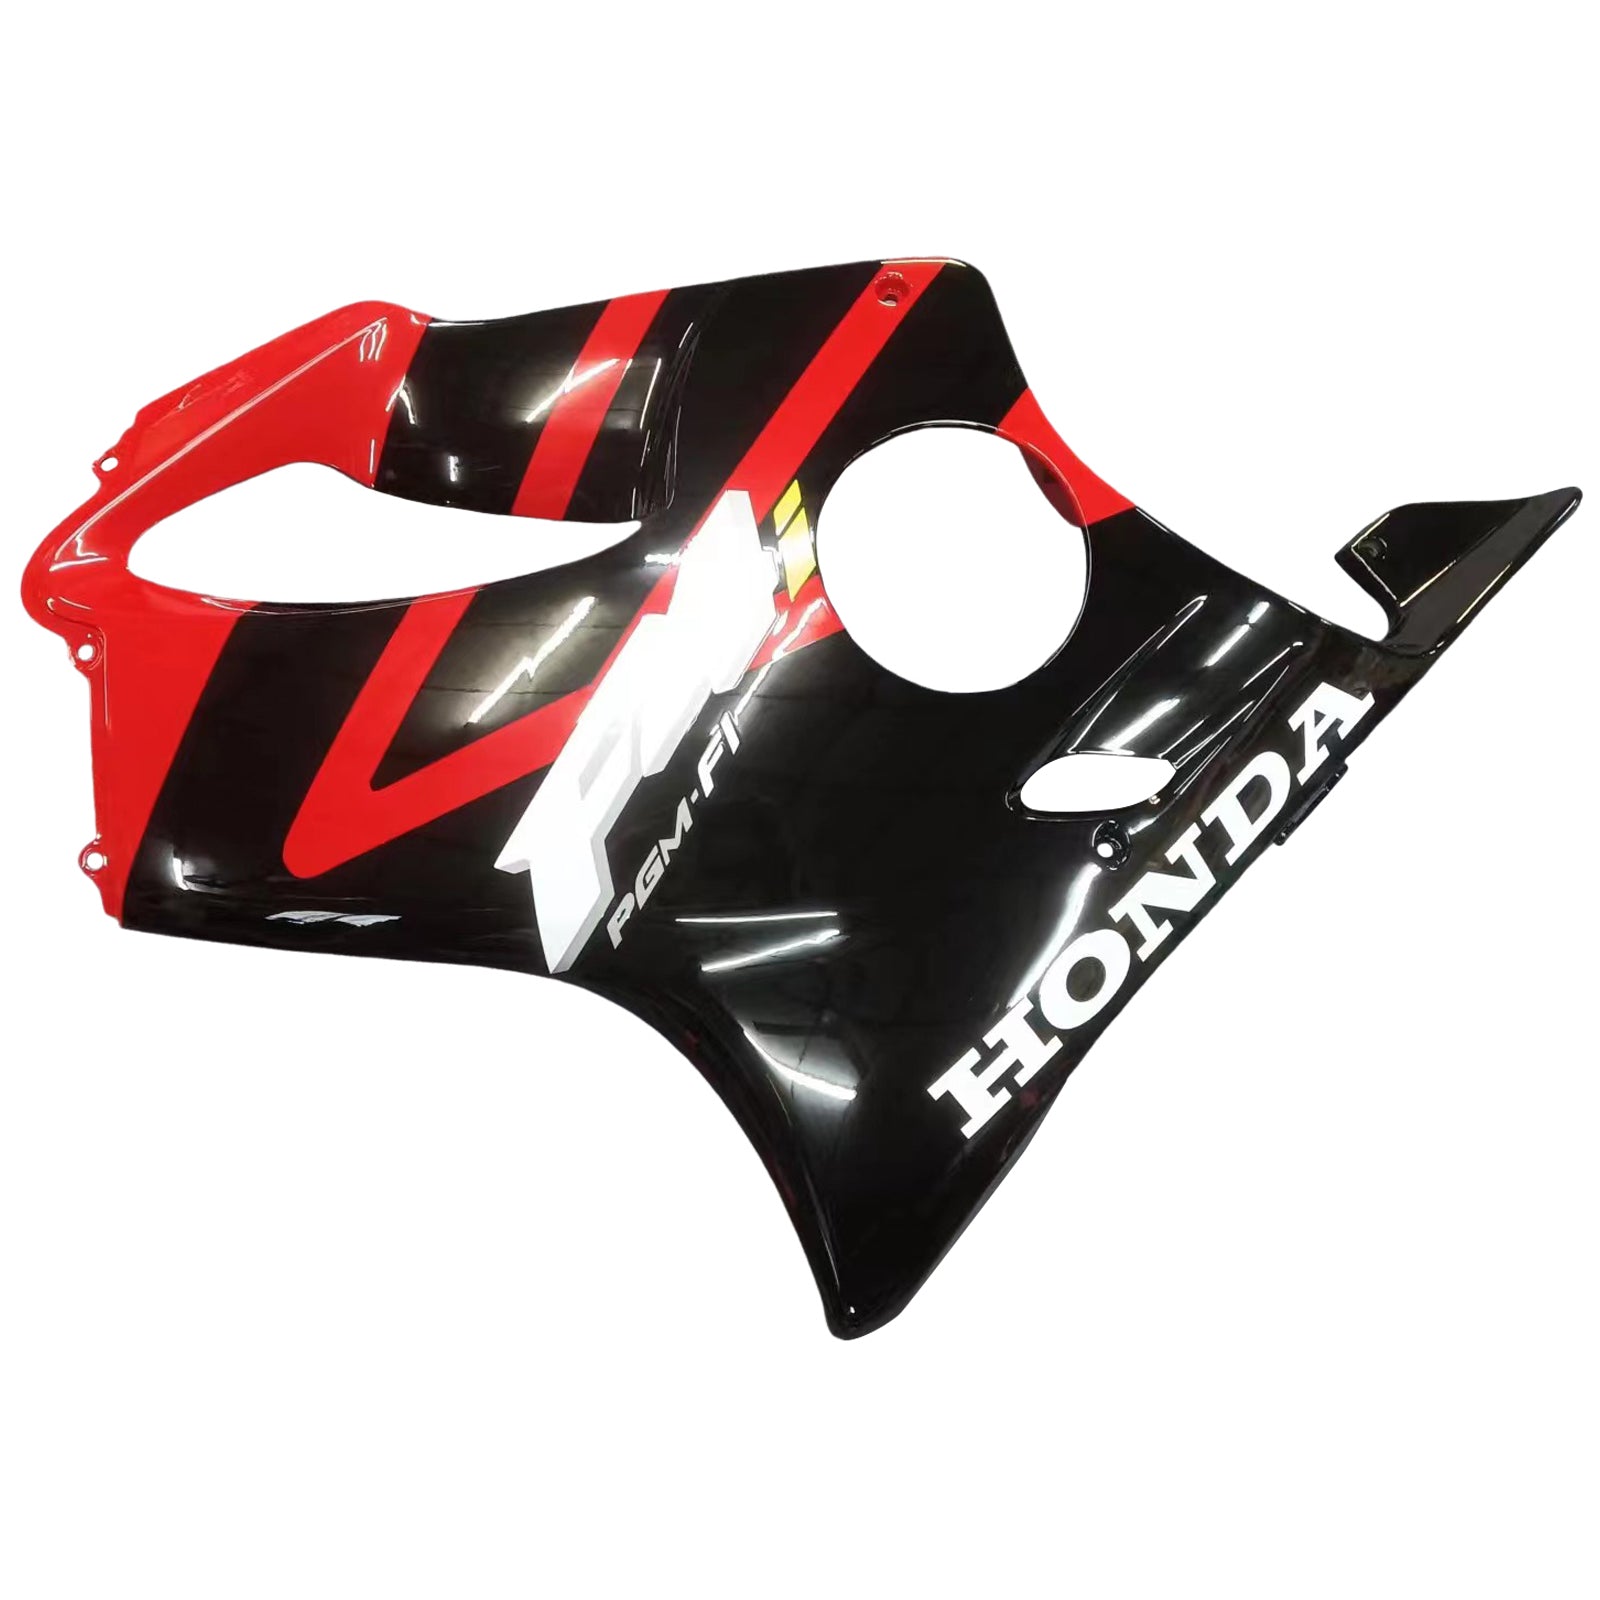 Amotopart 2004-2007 Honda CBR600 F4i Red&Black Fairing Kit